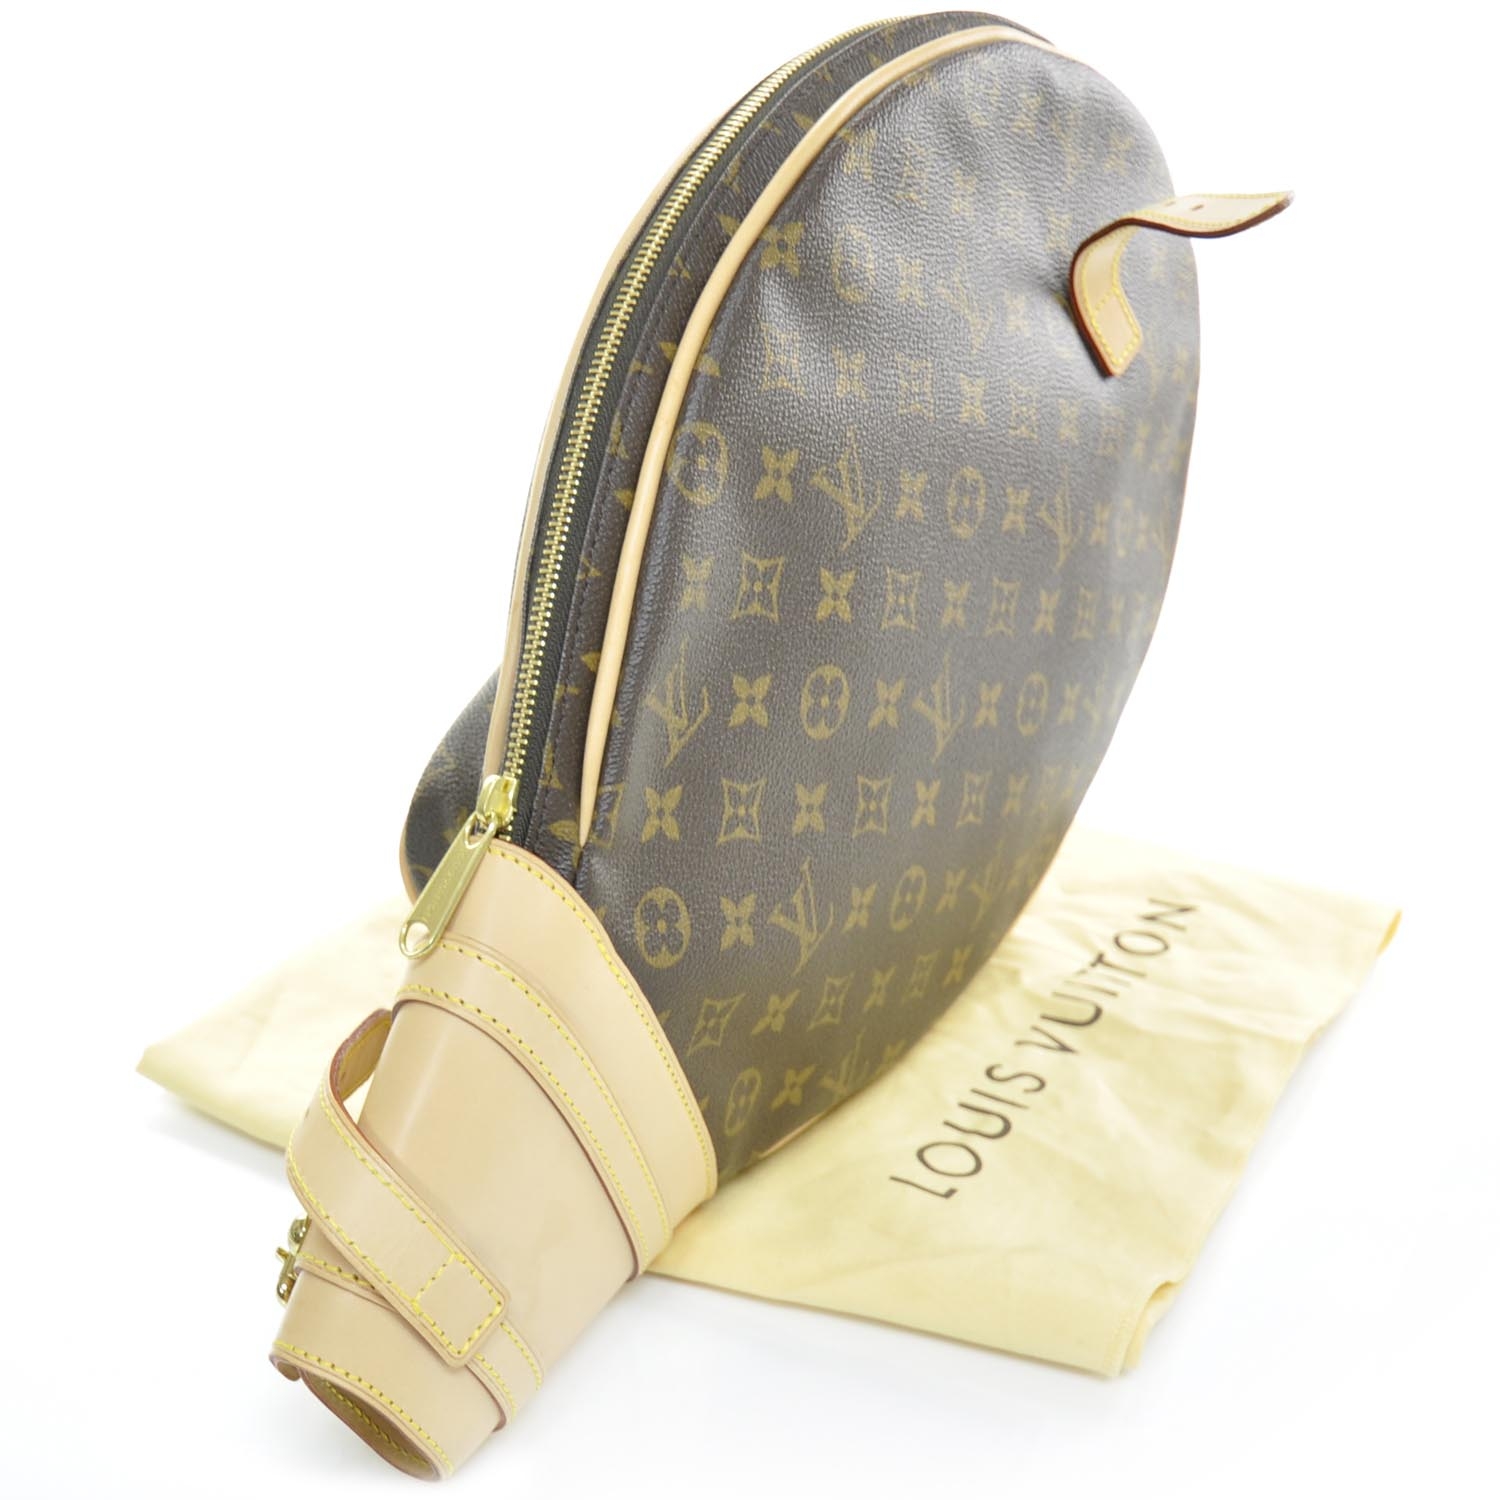 LV Monogram Vintage Tennis Racket Cover – Luxmary Handbags